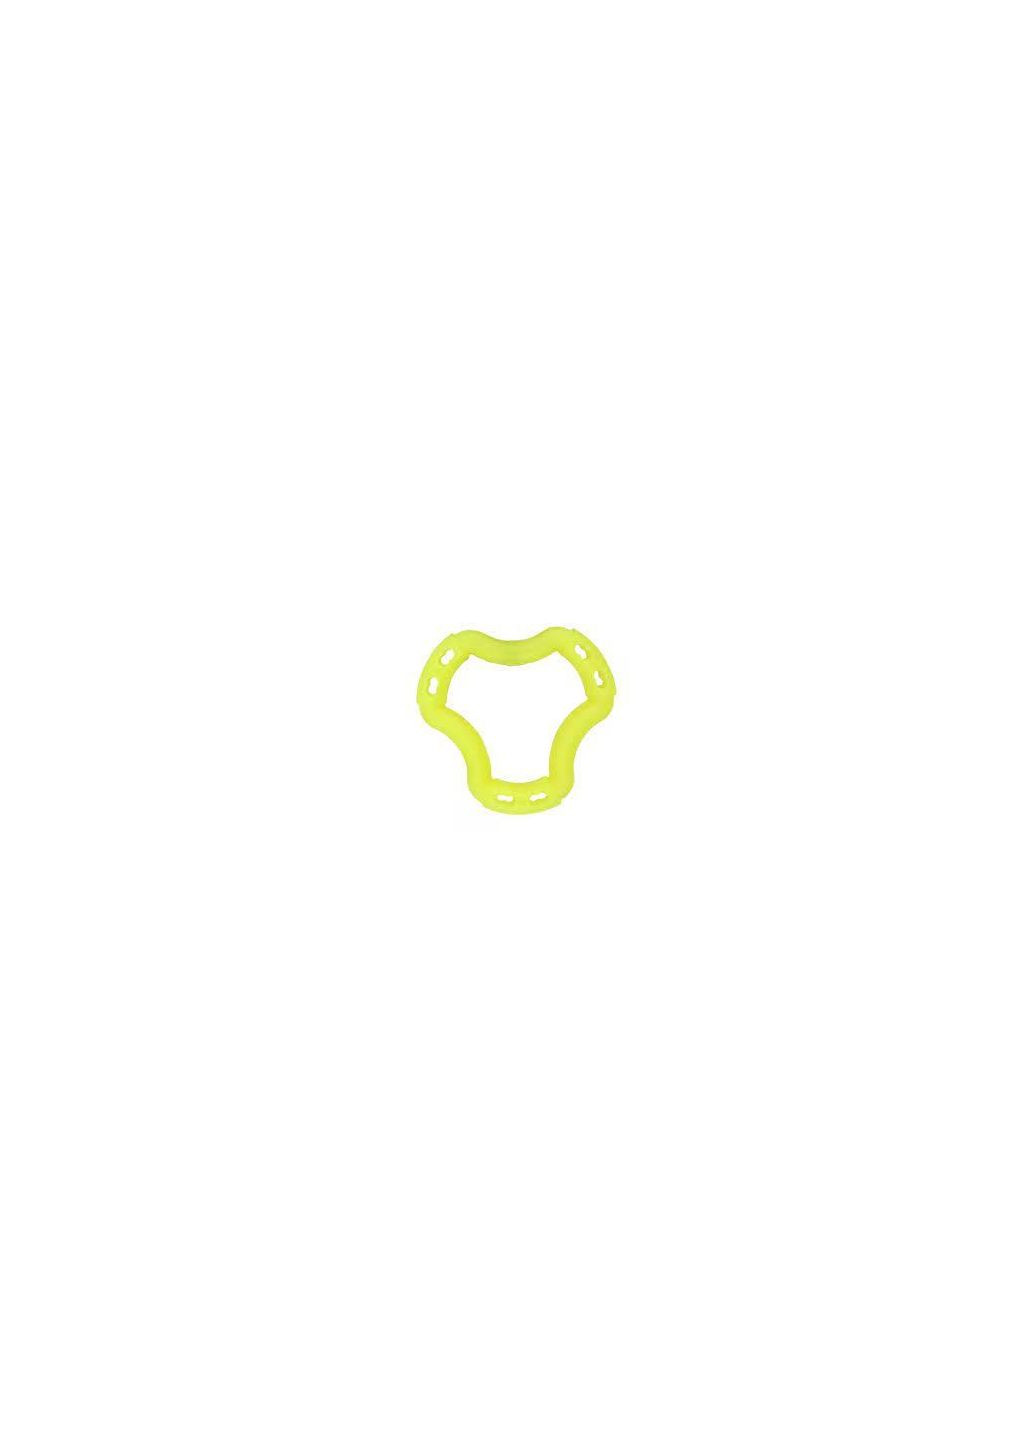 Іграшка Fun кільце 6 сторін, жовтий, 20 см 88221 AnimAll (278309119)